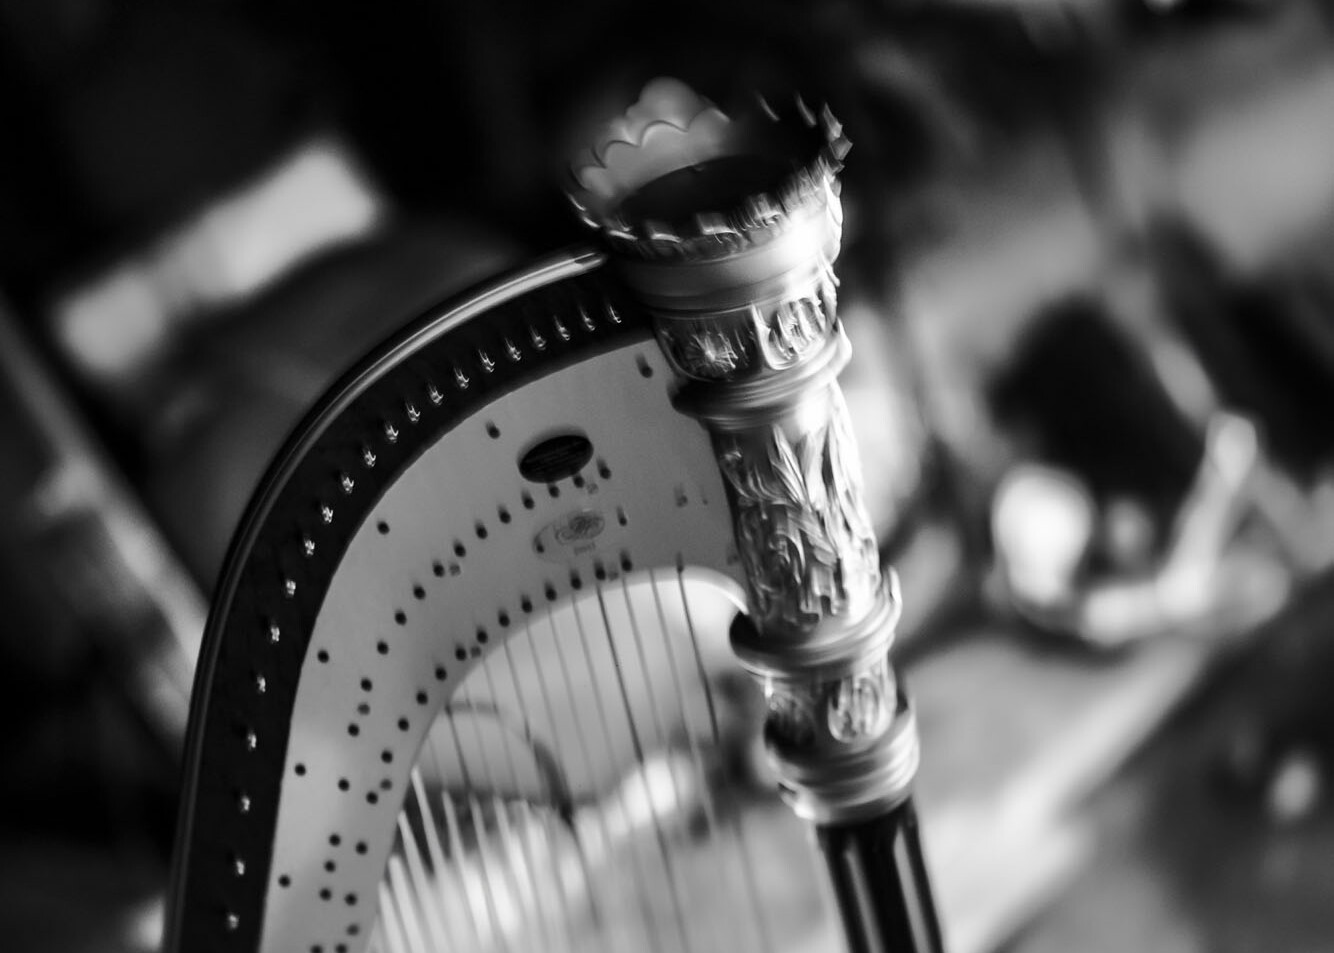 Ein kunstvoll verzierter Teil einer Harfe, die für 'Die zweite Sonne' im Theater Lüneburg genutzt wird.